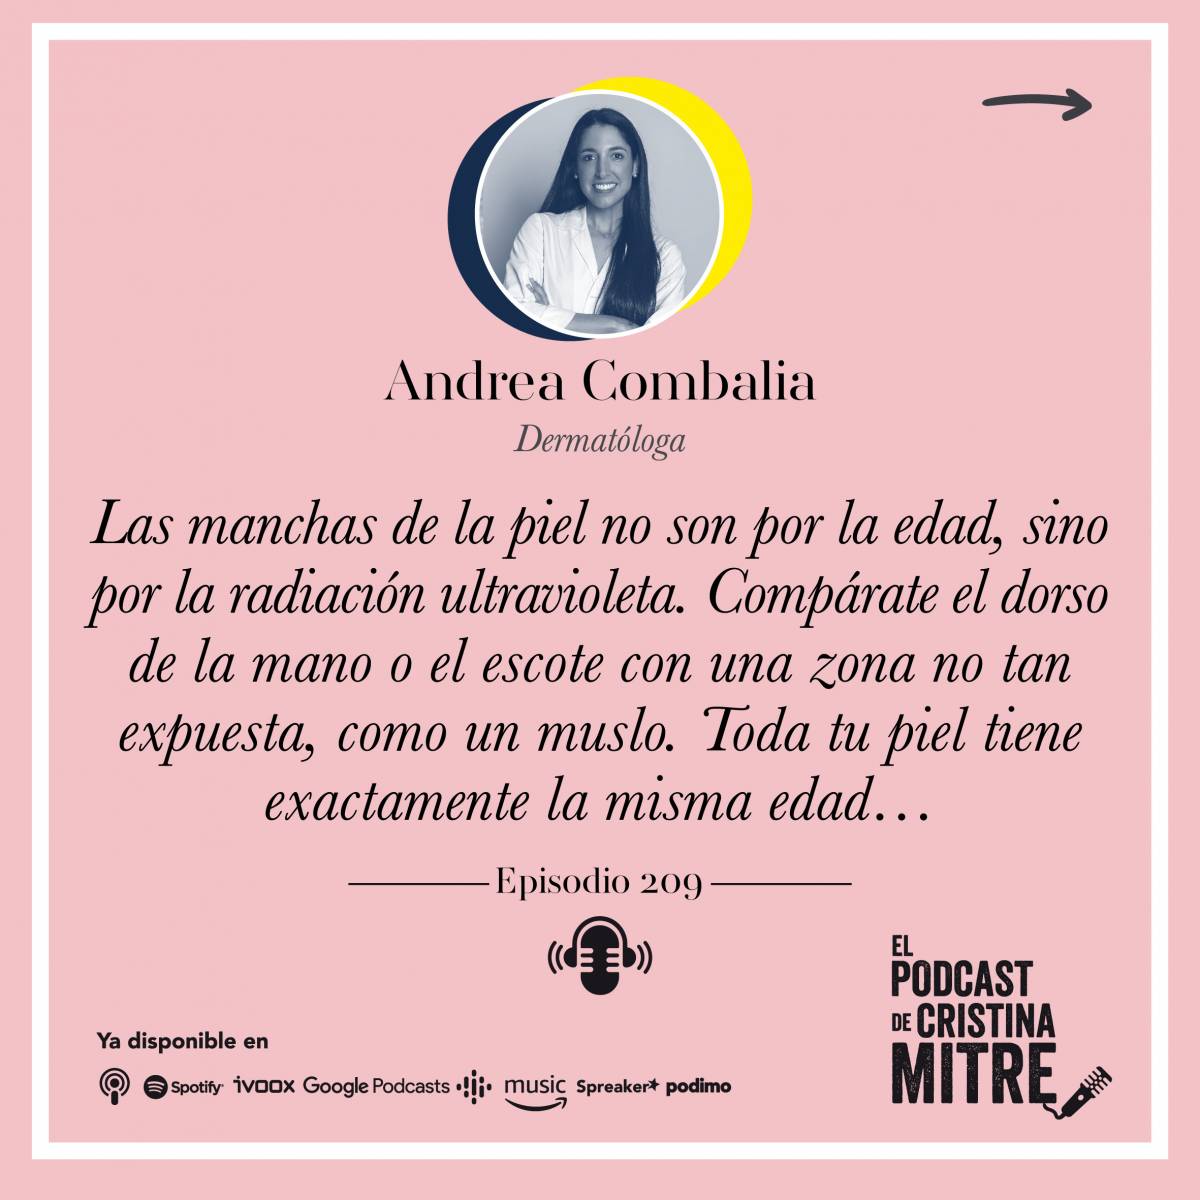 El podcast de Cristina Mitre Andrea Combalia manchas piel